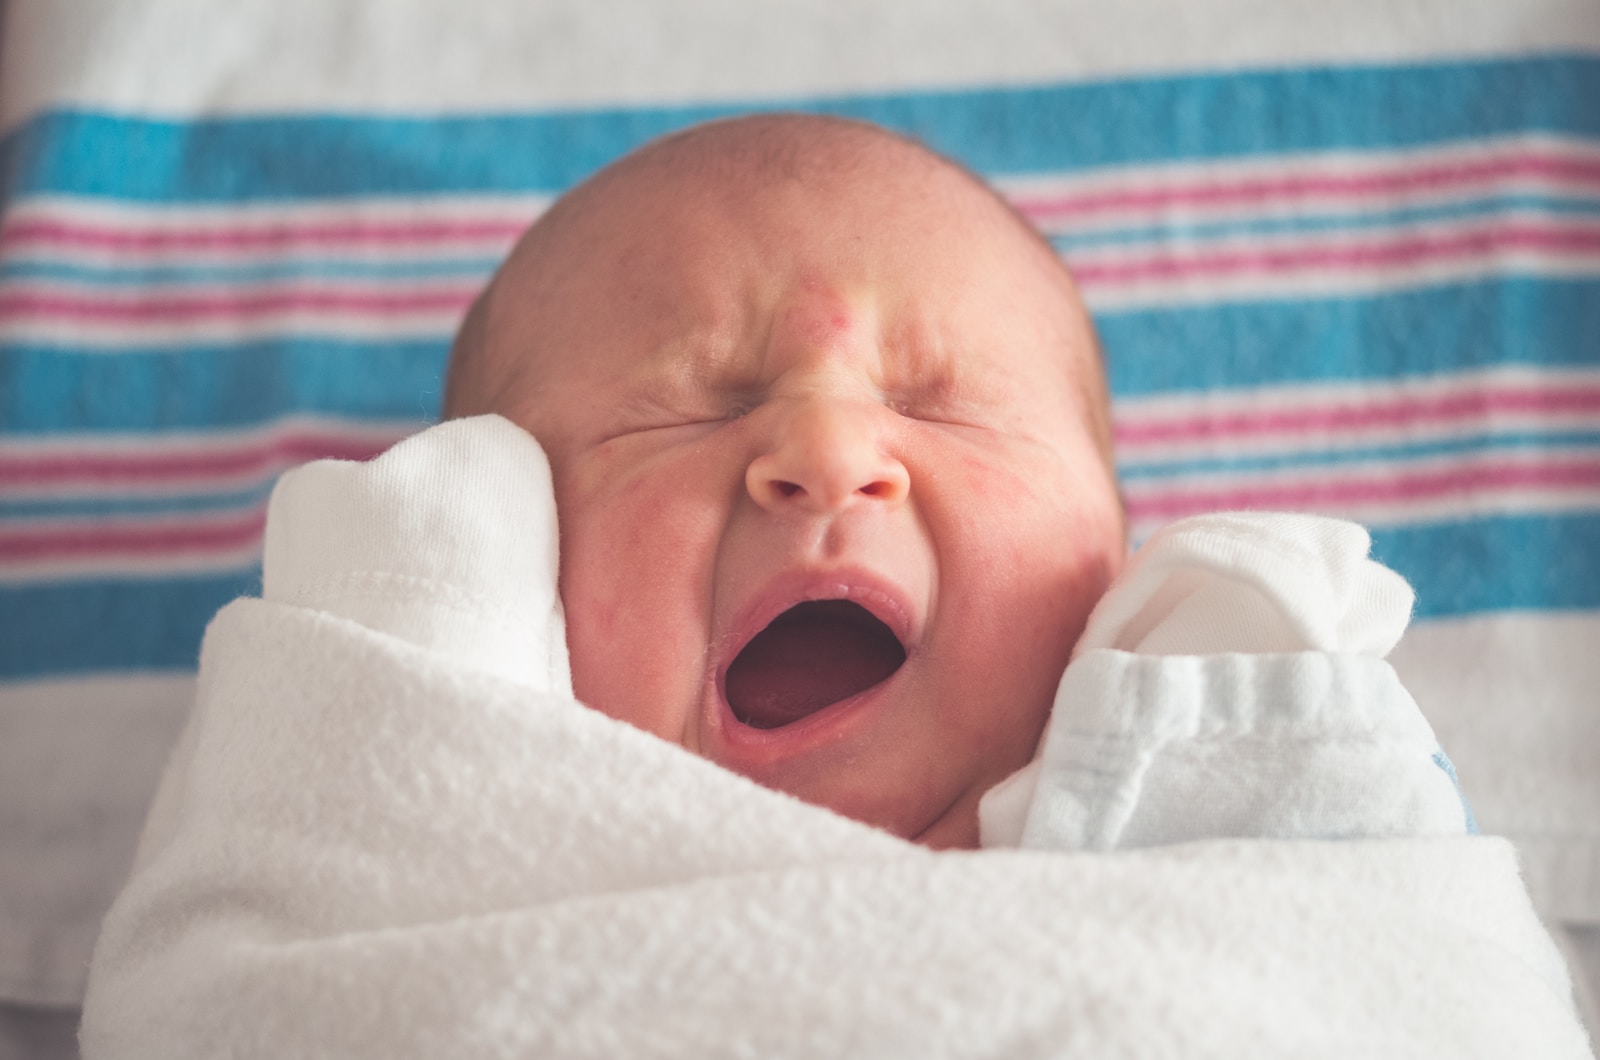 אסטמה של העור אצל תינוקות - כל מה שחשוב לדעת בנושא